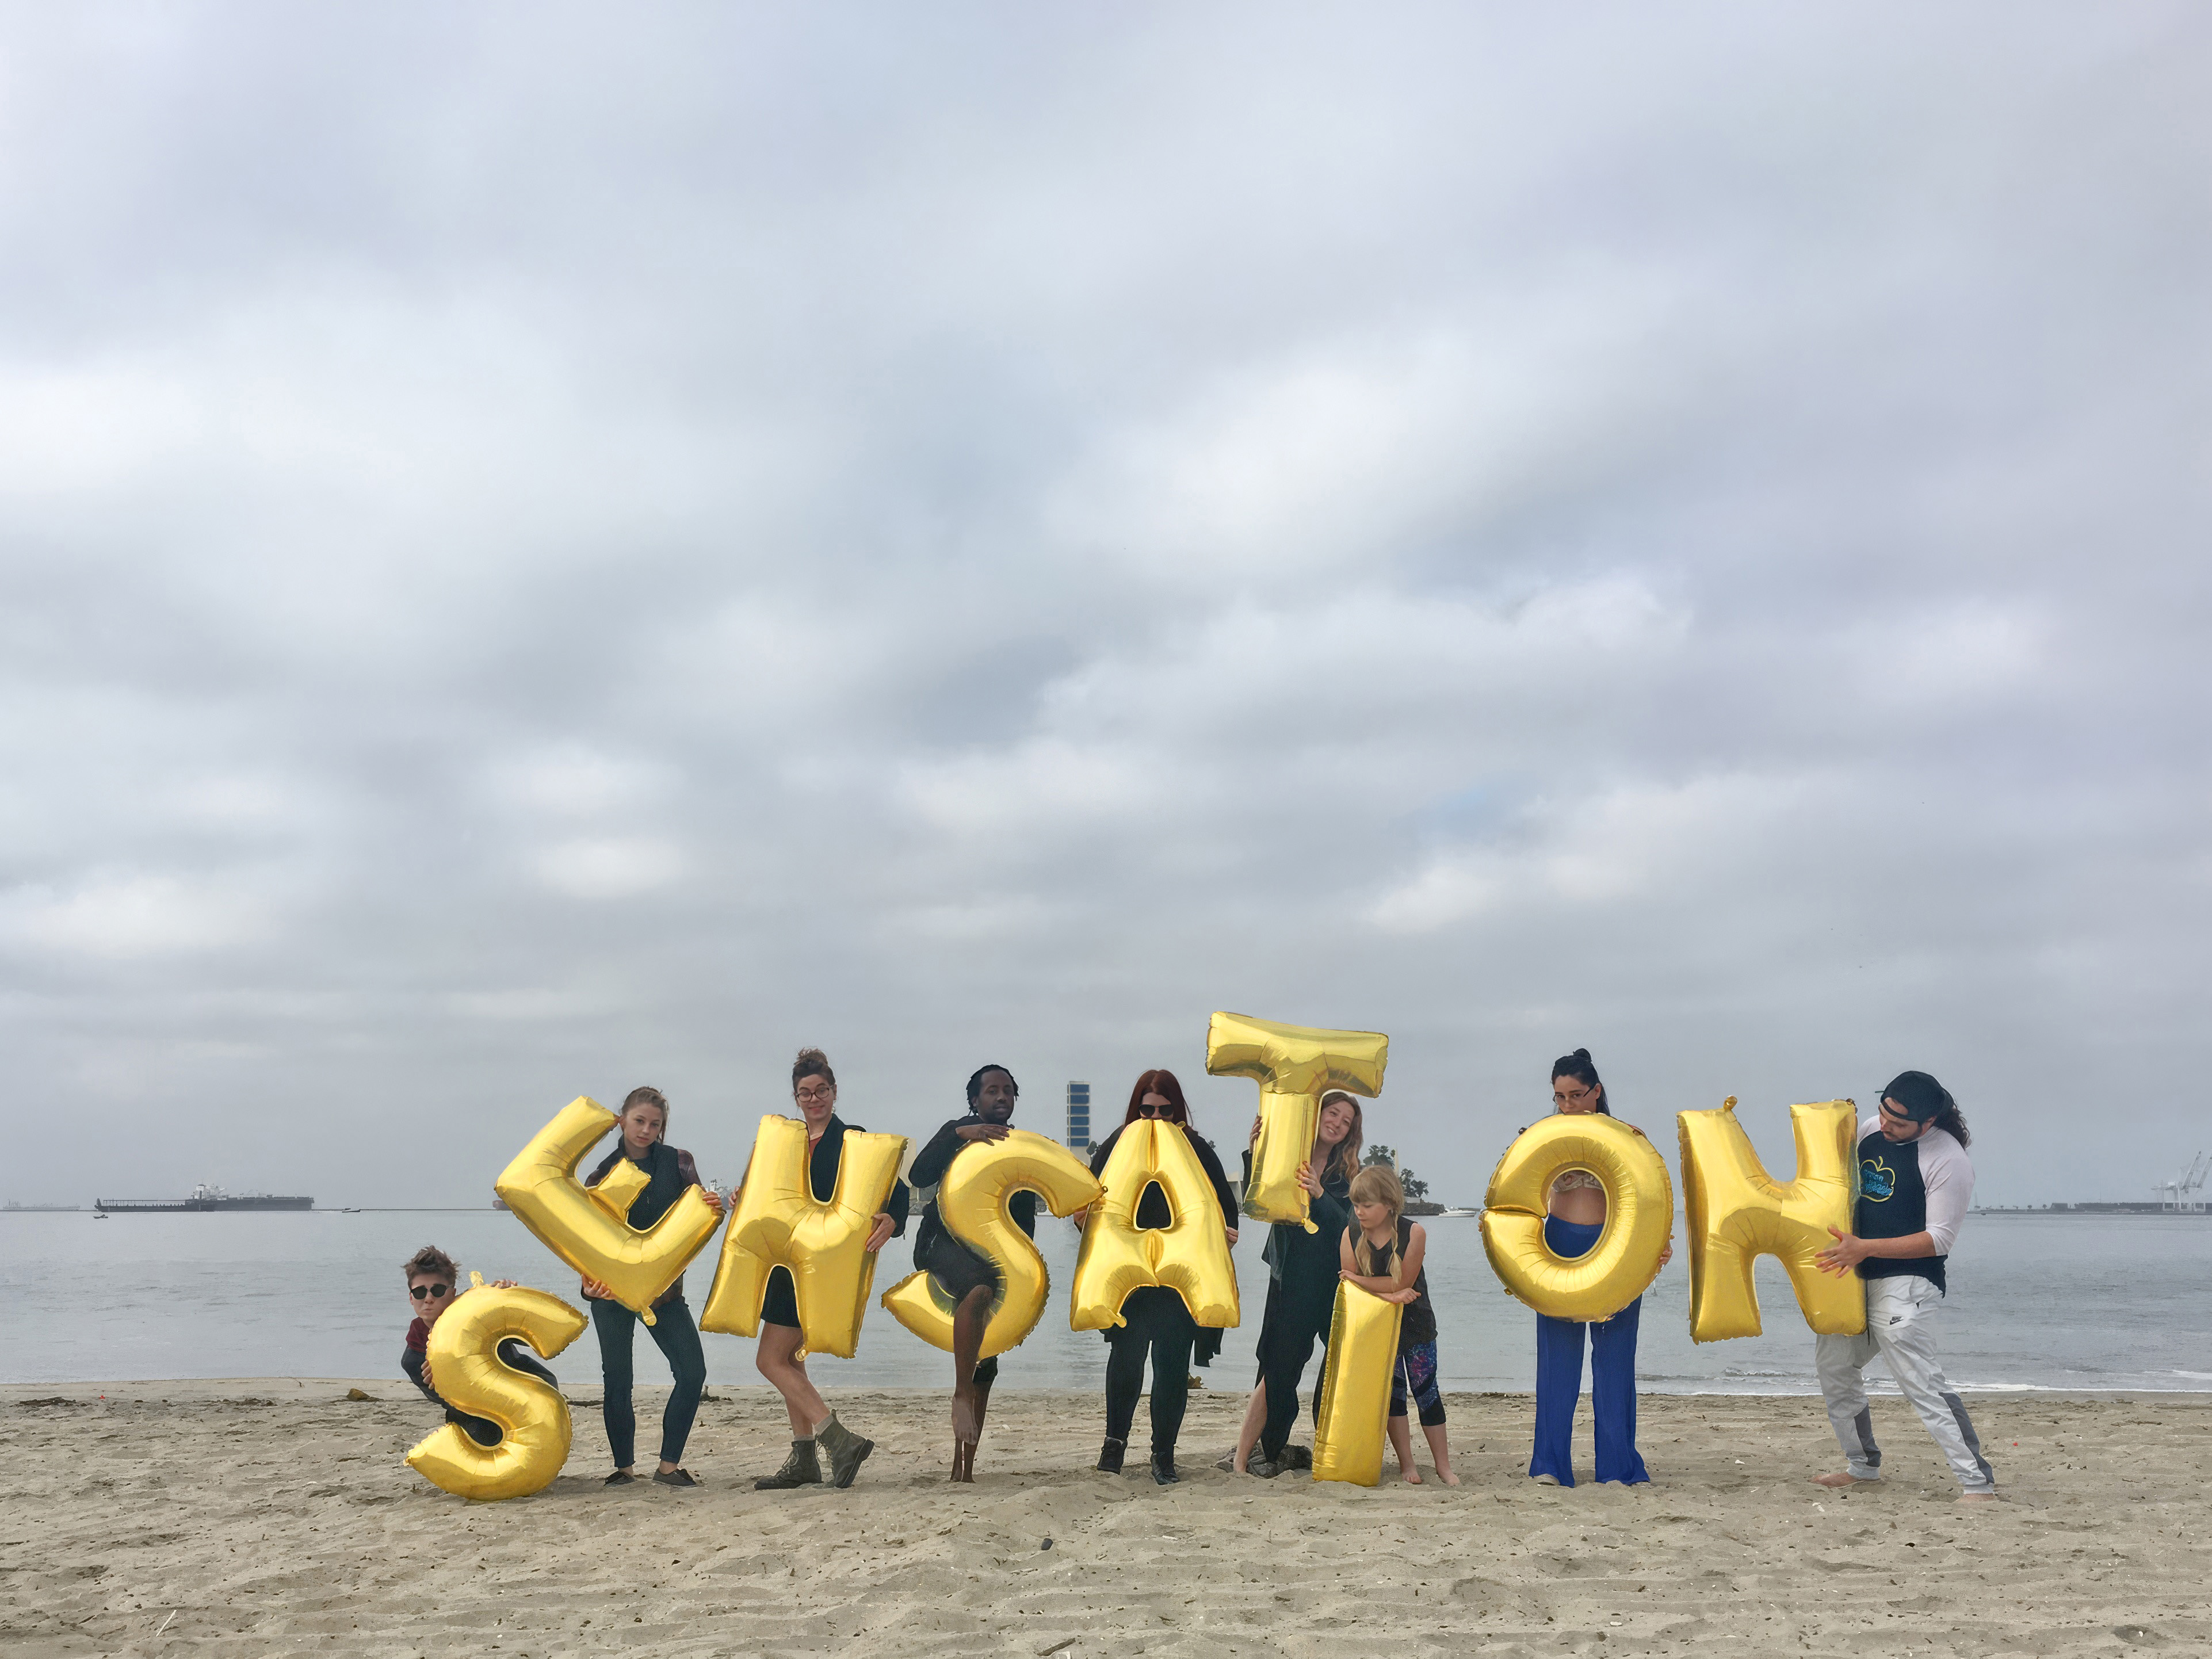 US, Long Beach, Long Beach City Beach - Sensation, Silence Was Golden, gold balloons